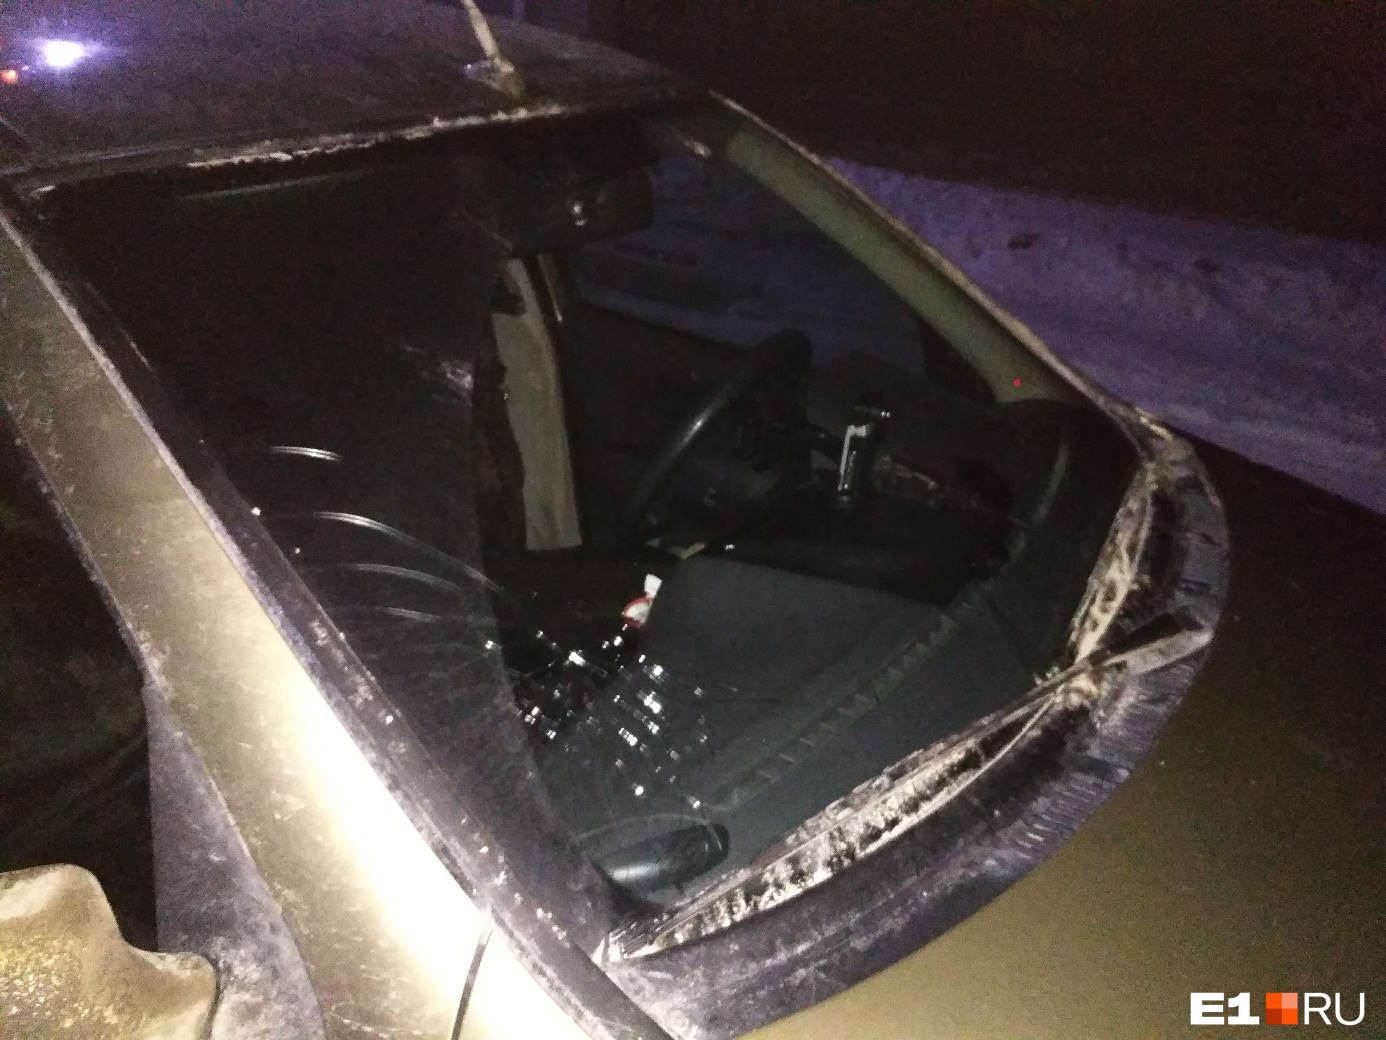 Повреждения своего автомобиля Дмитрий зафиксировал в отделе полиции